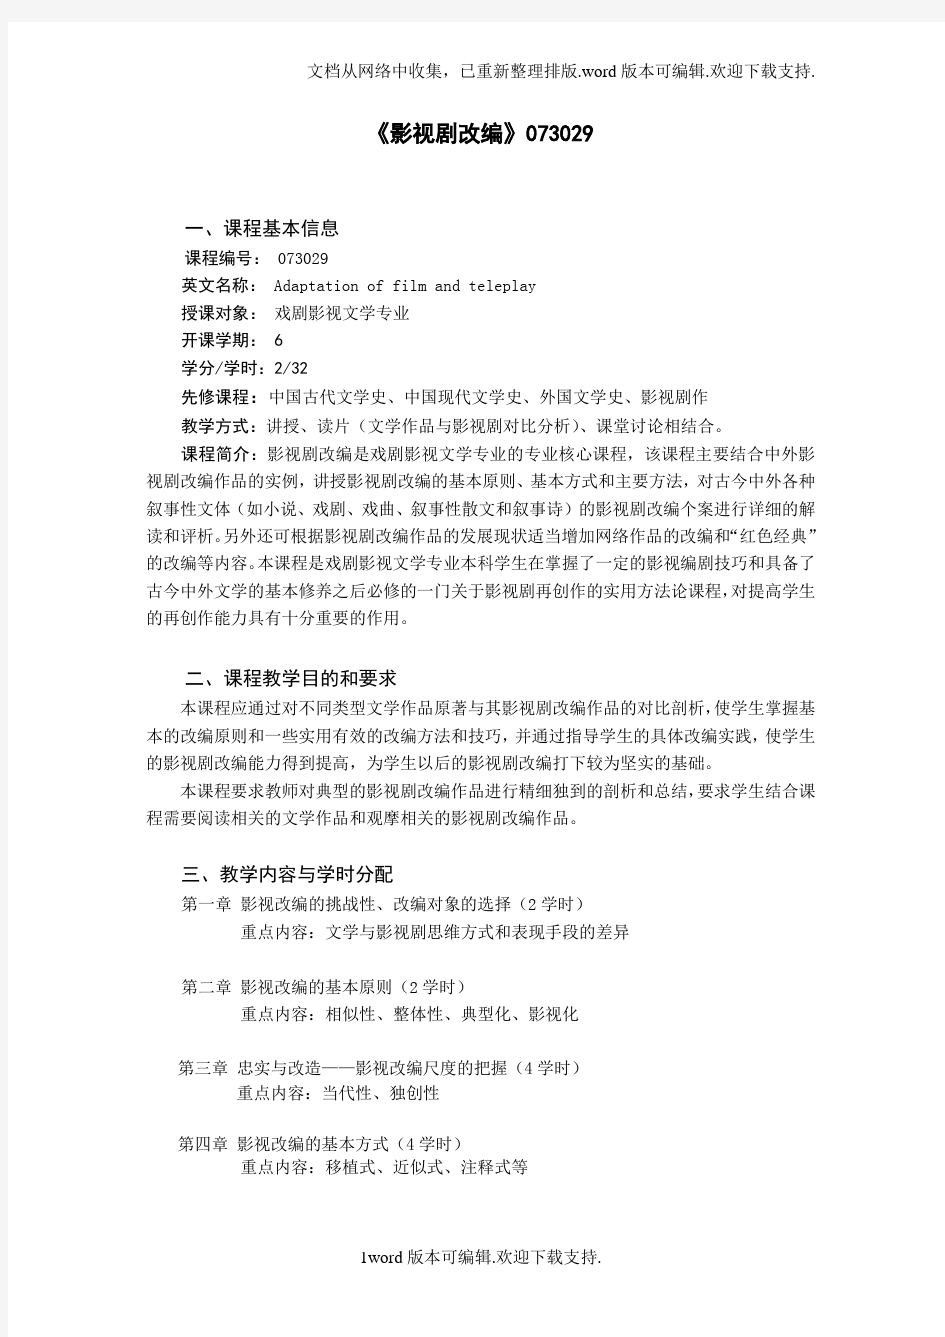 中国传媒大学影视艺术学院戏剧影视文学专业教学大纲